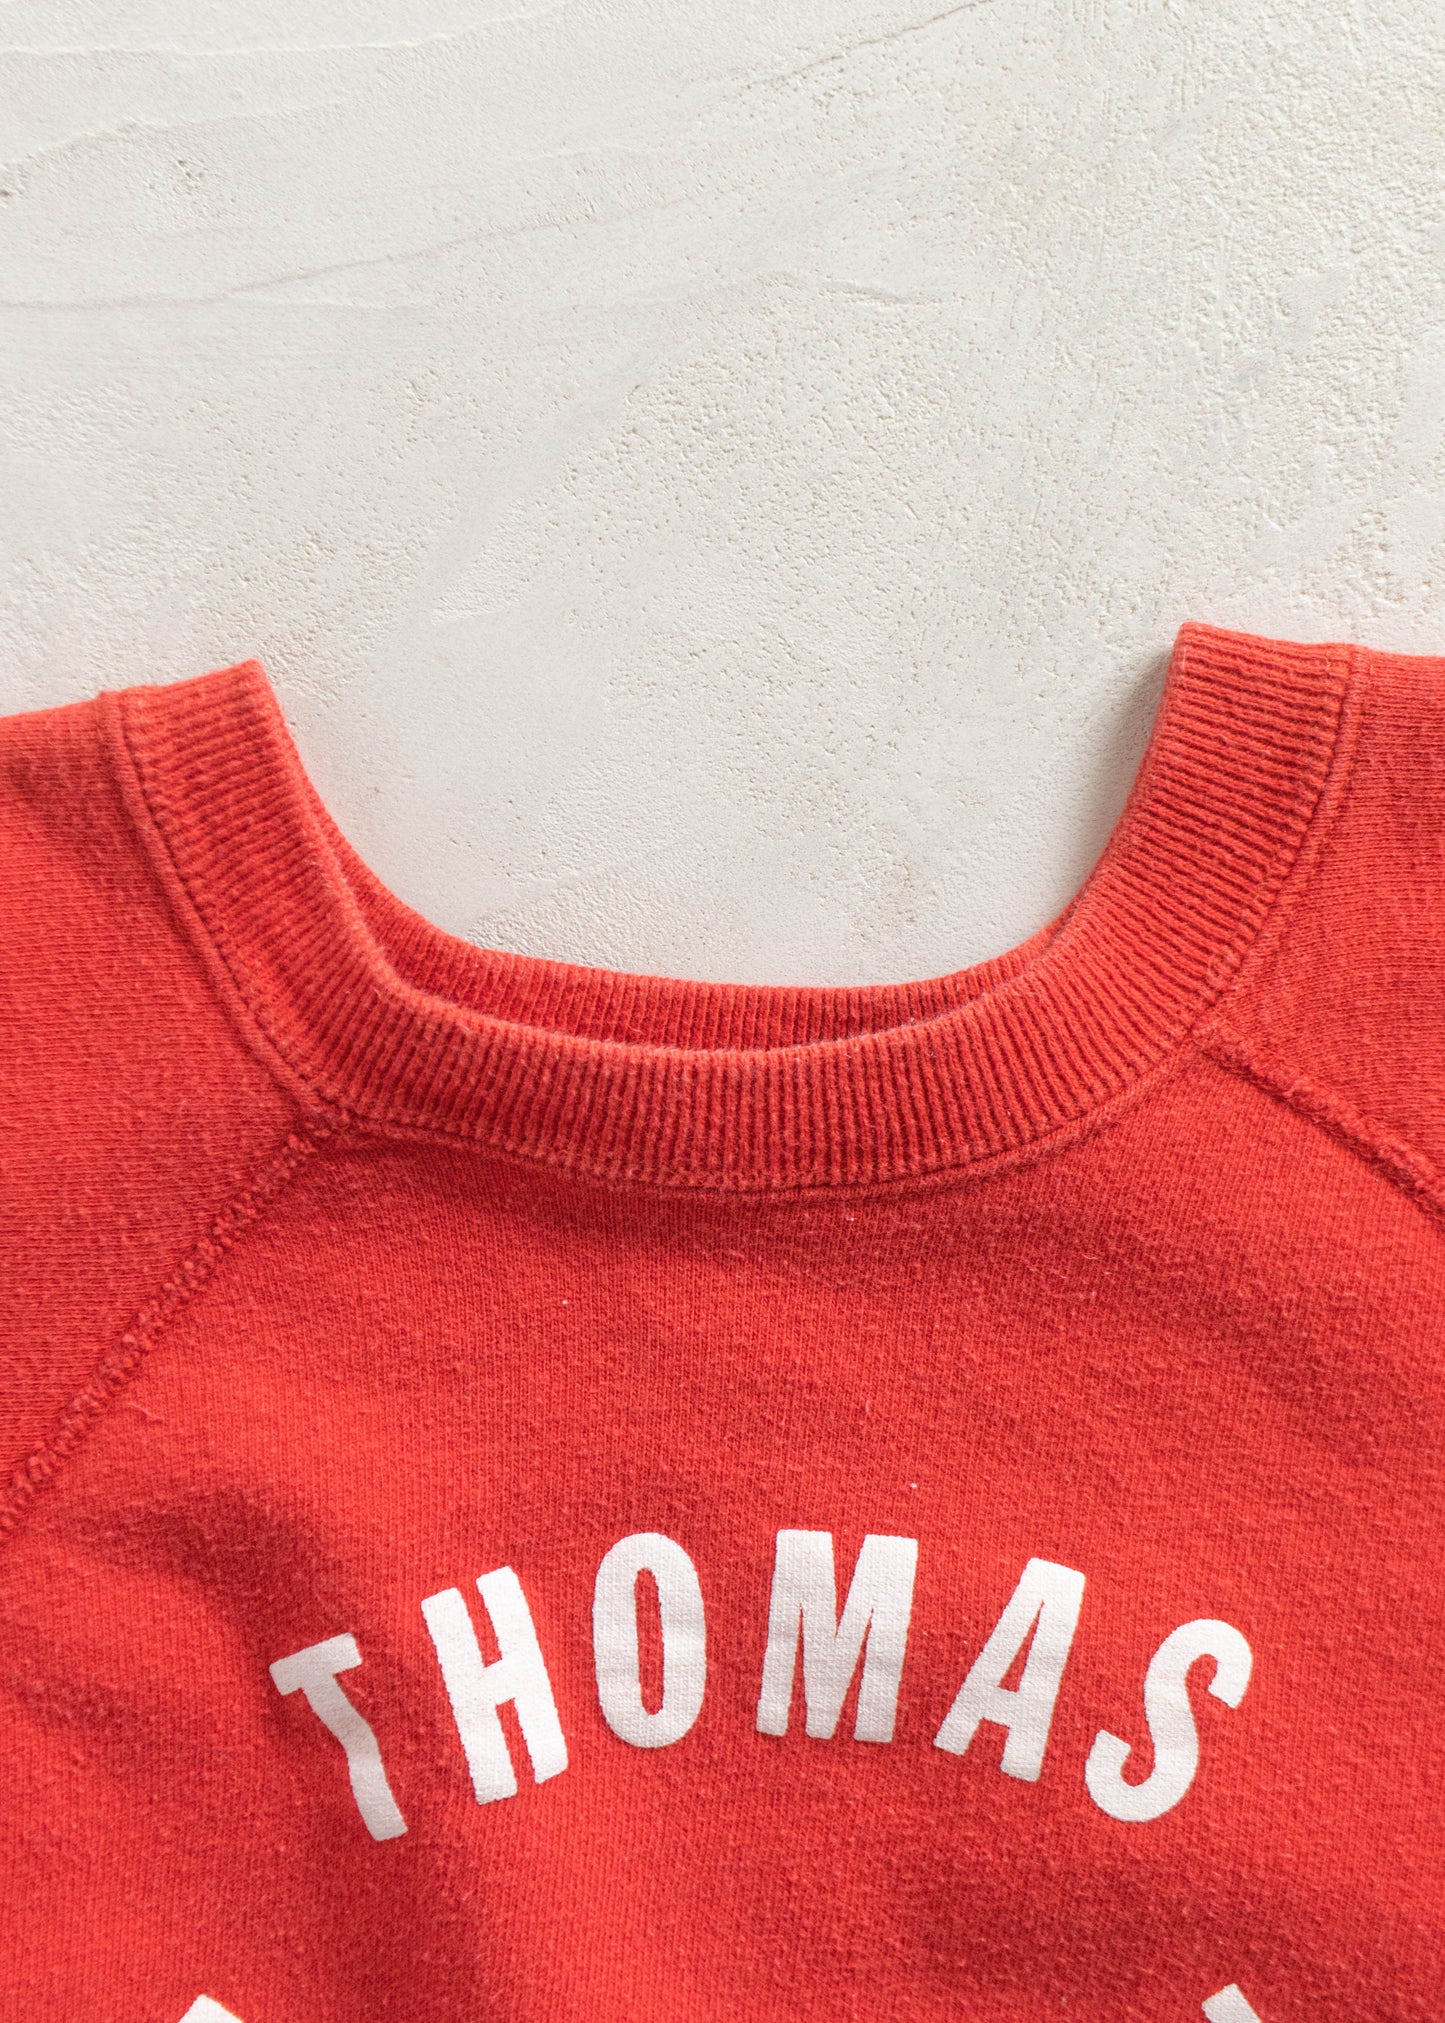 Vintage 1970s Thomas Marshall Short Sleeve Sweatshirt Size 2XS/XS